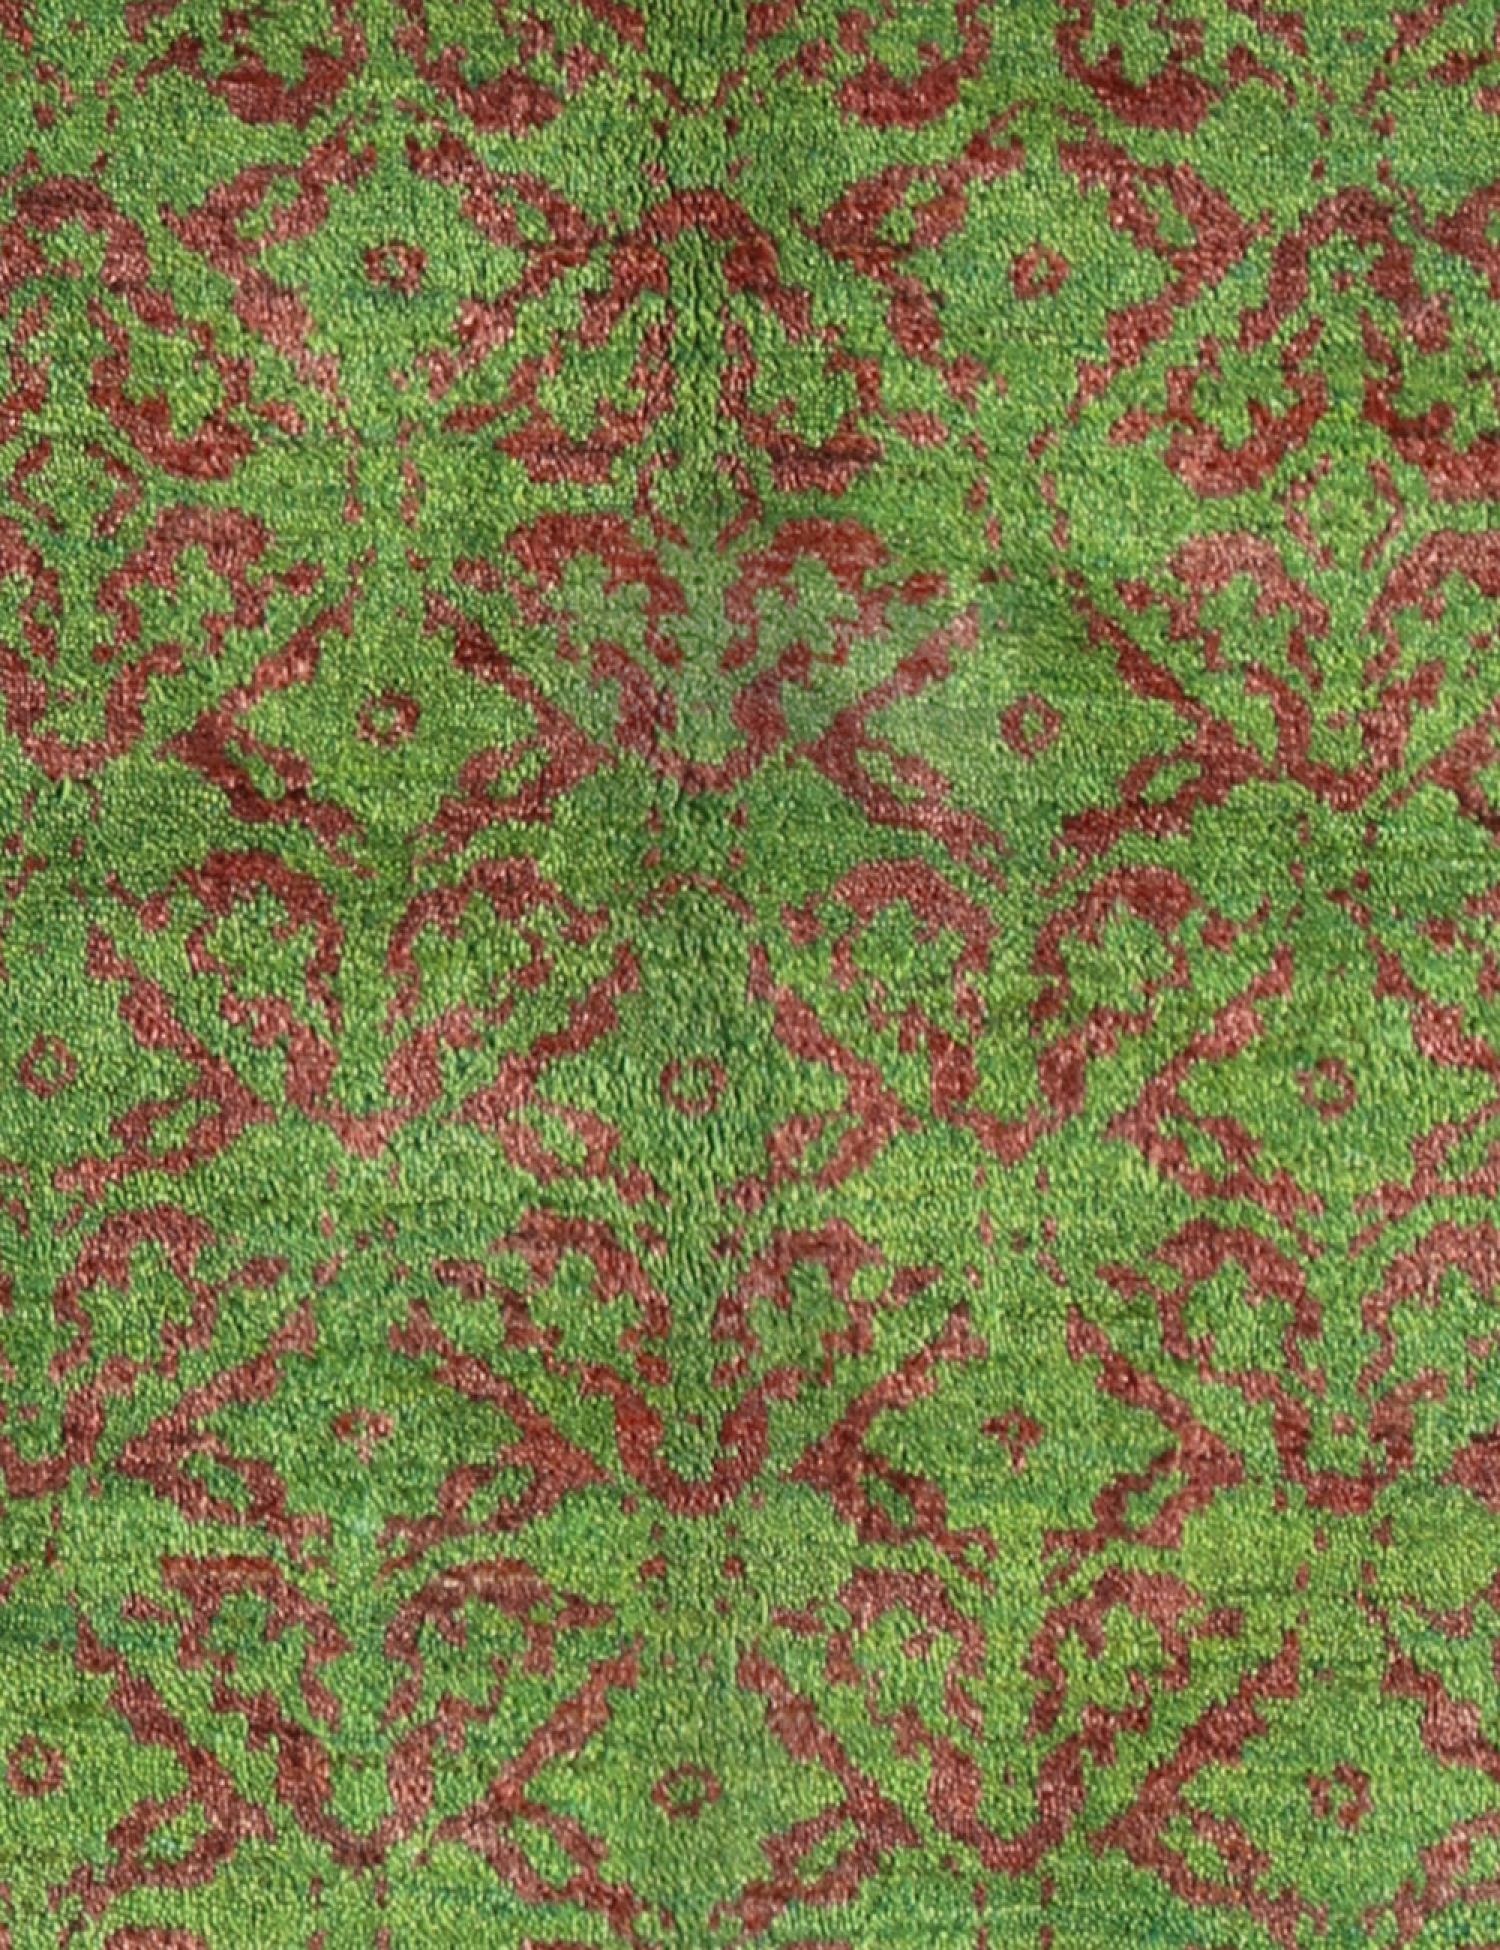 Persischer Gabbeh  grün <br/>196 x 150 cm